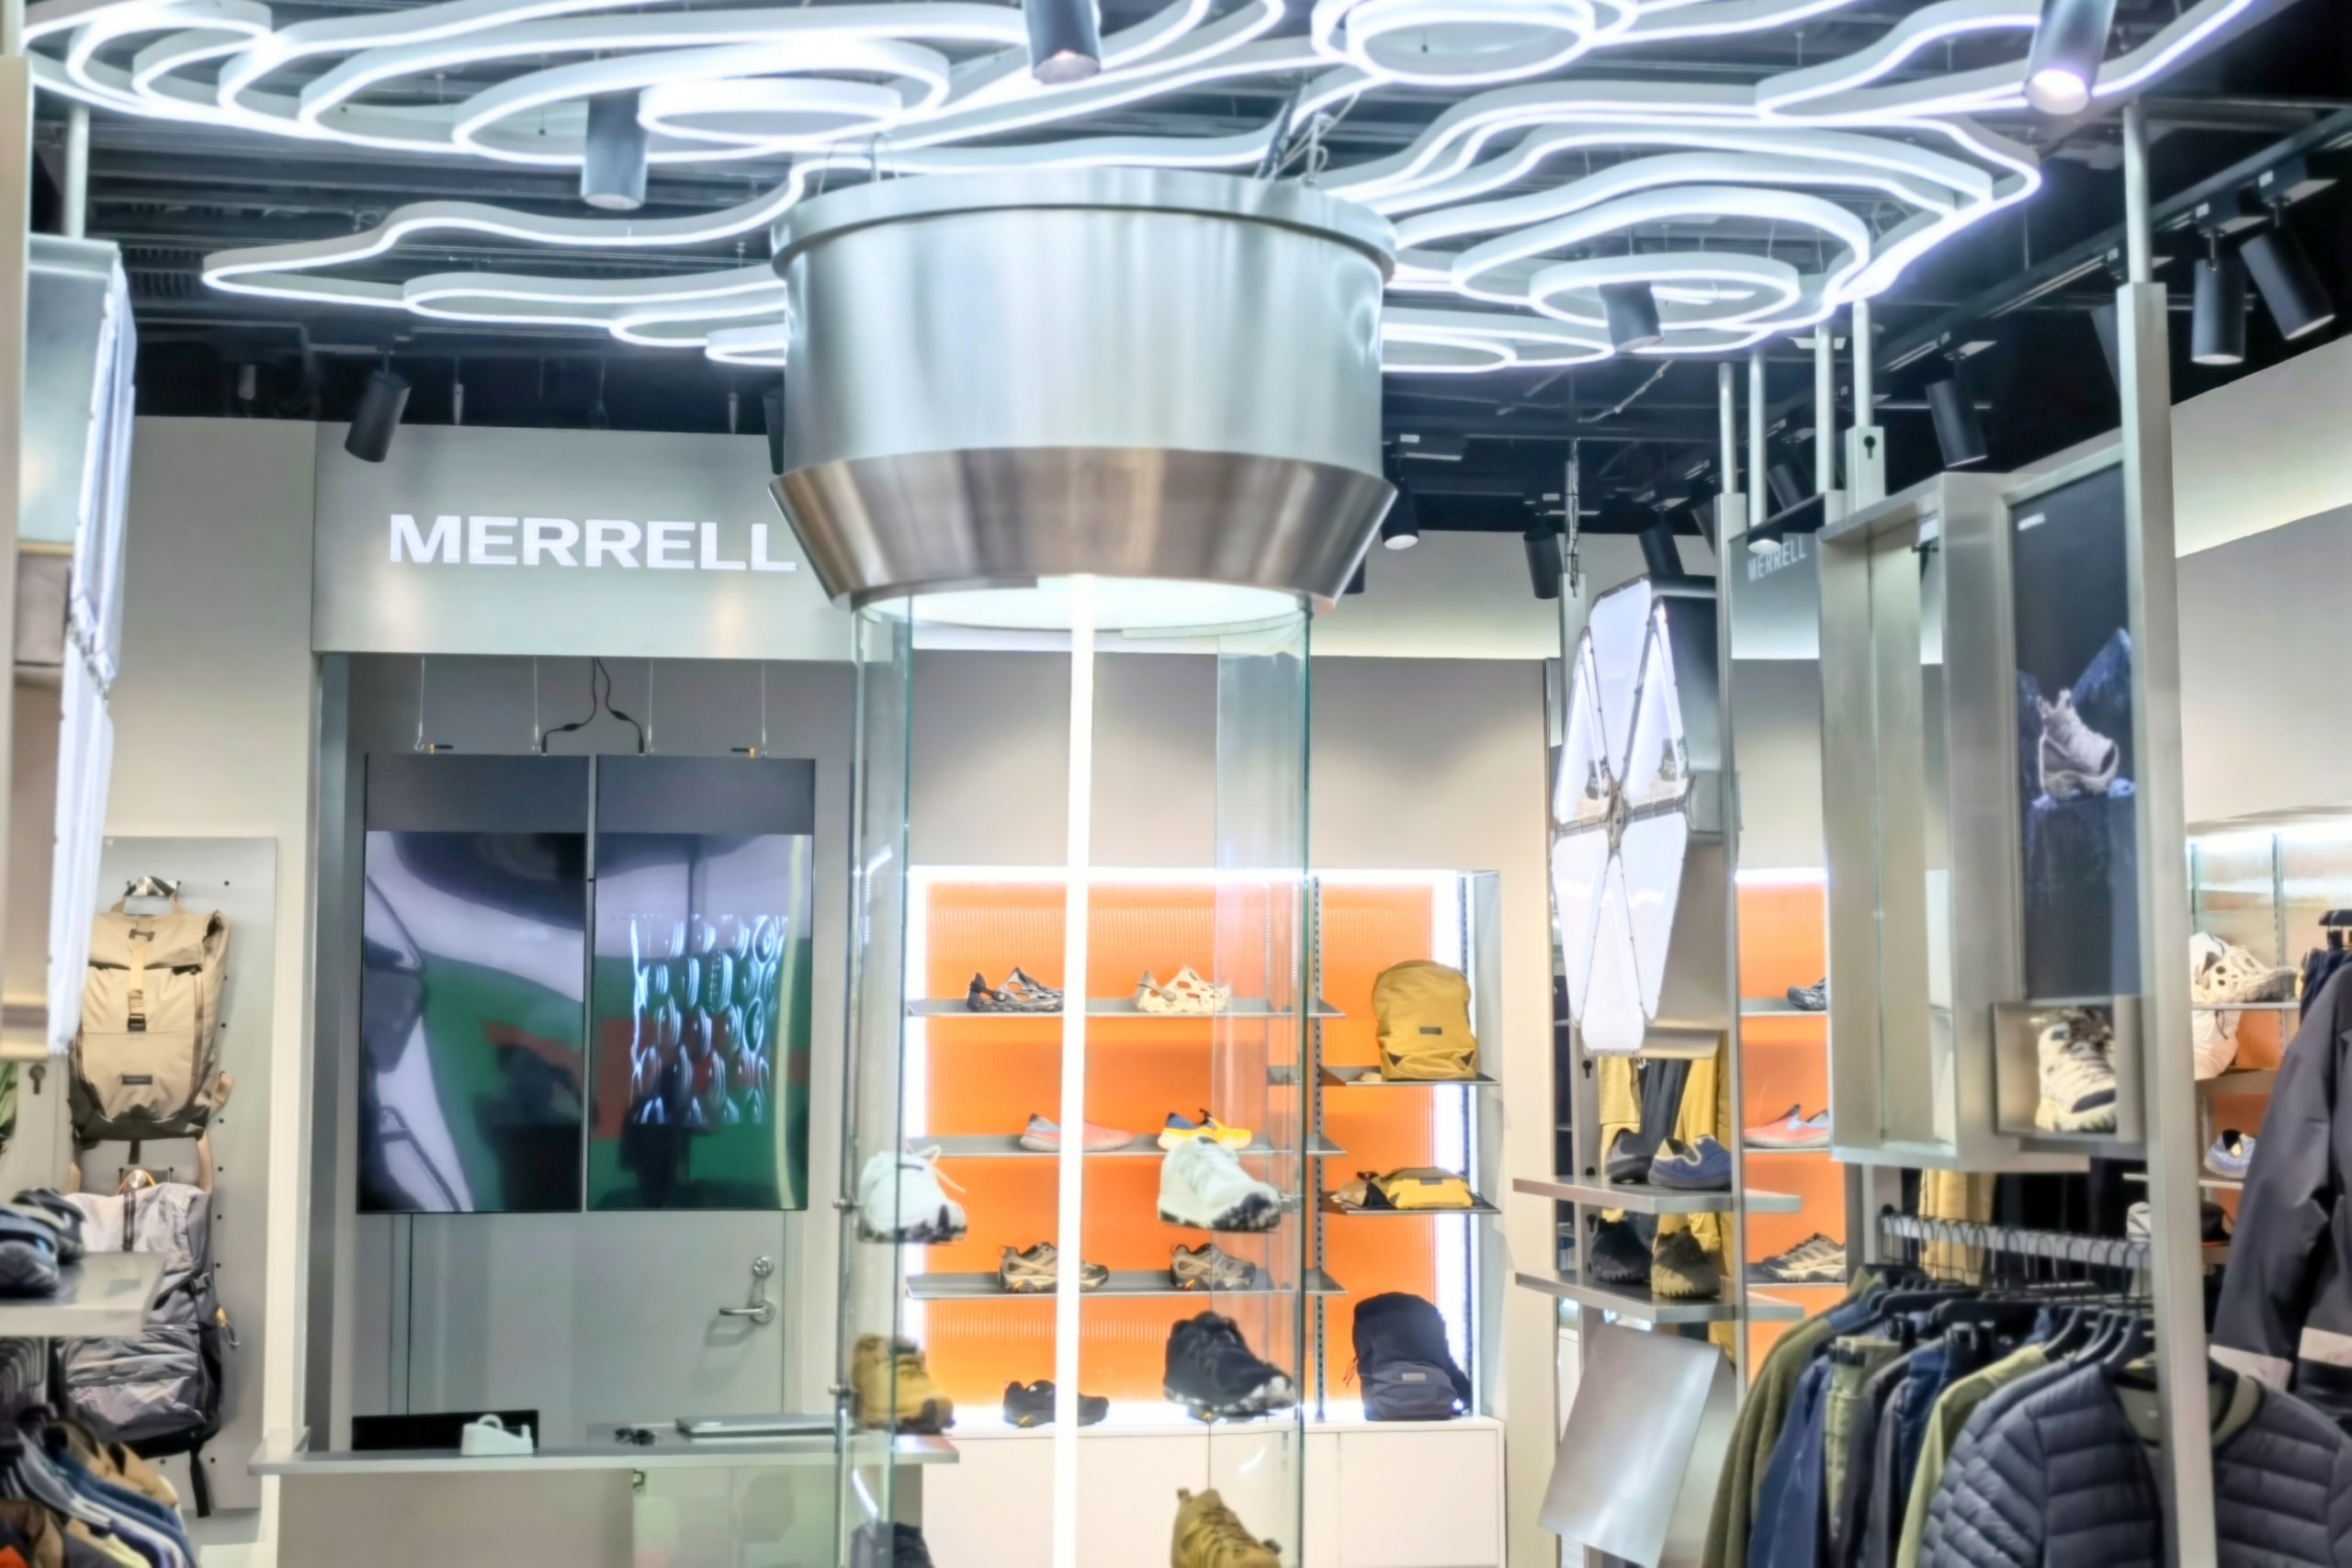 户外品牌 Merrell 形象店铺正式登陆上海